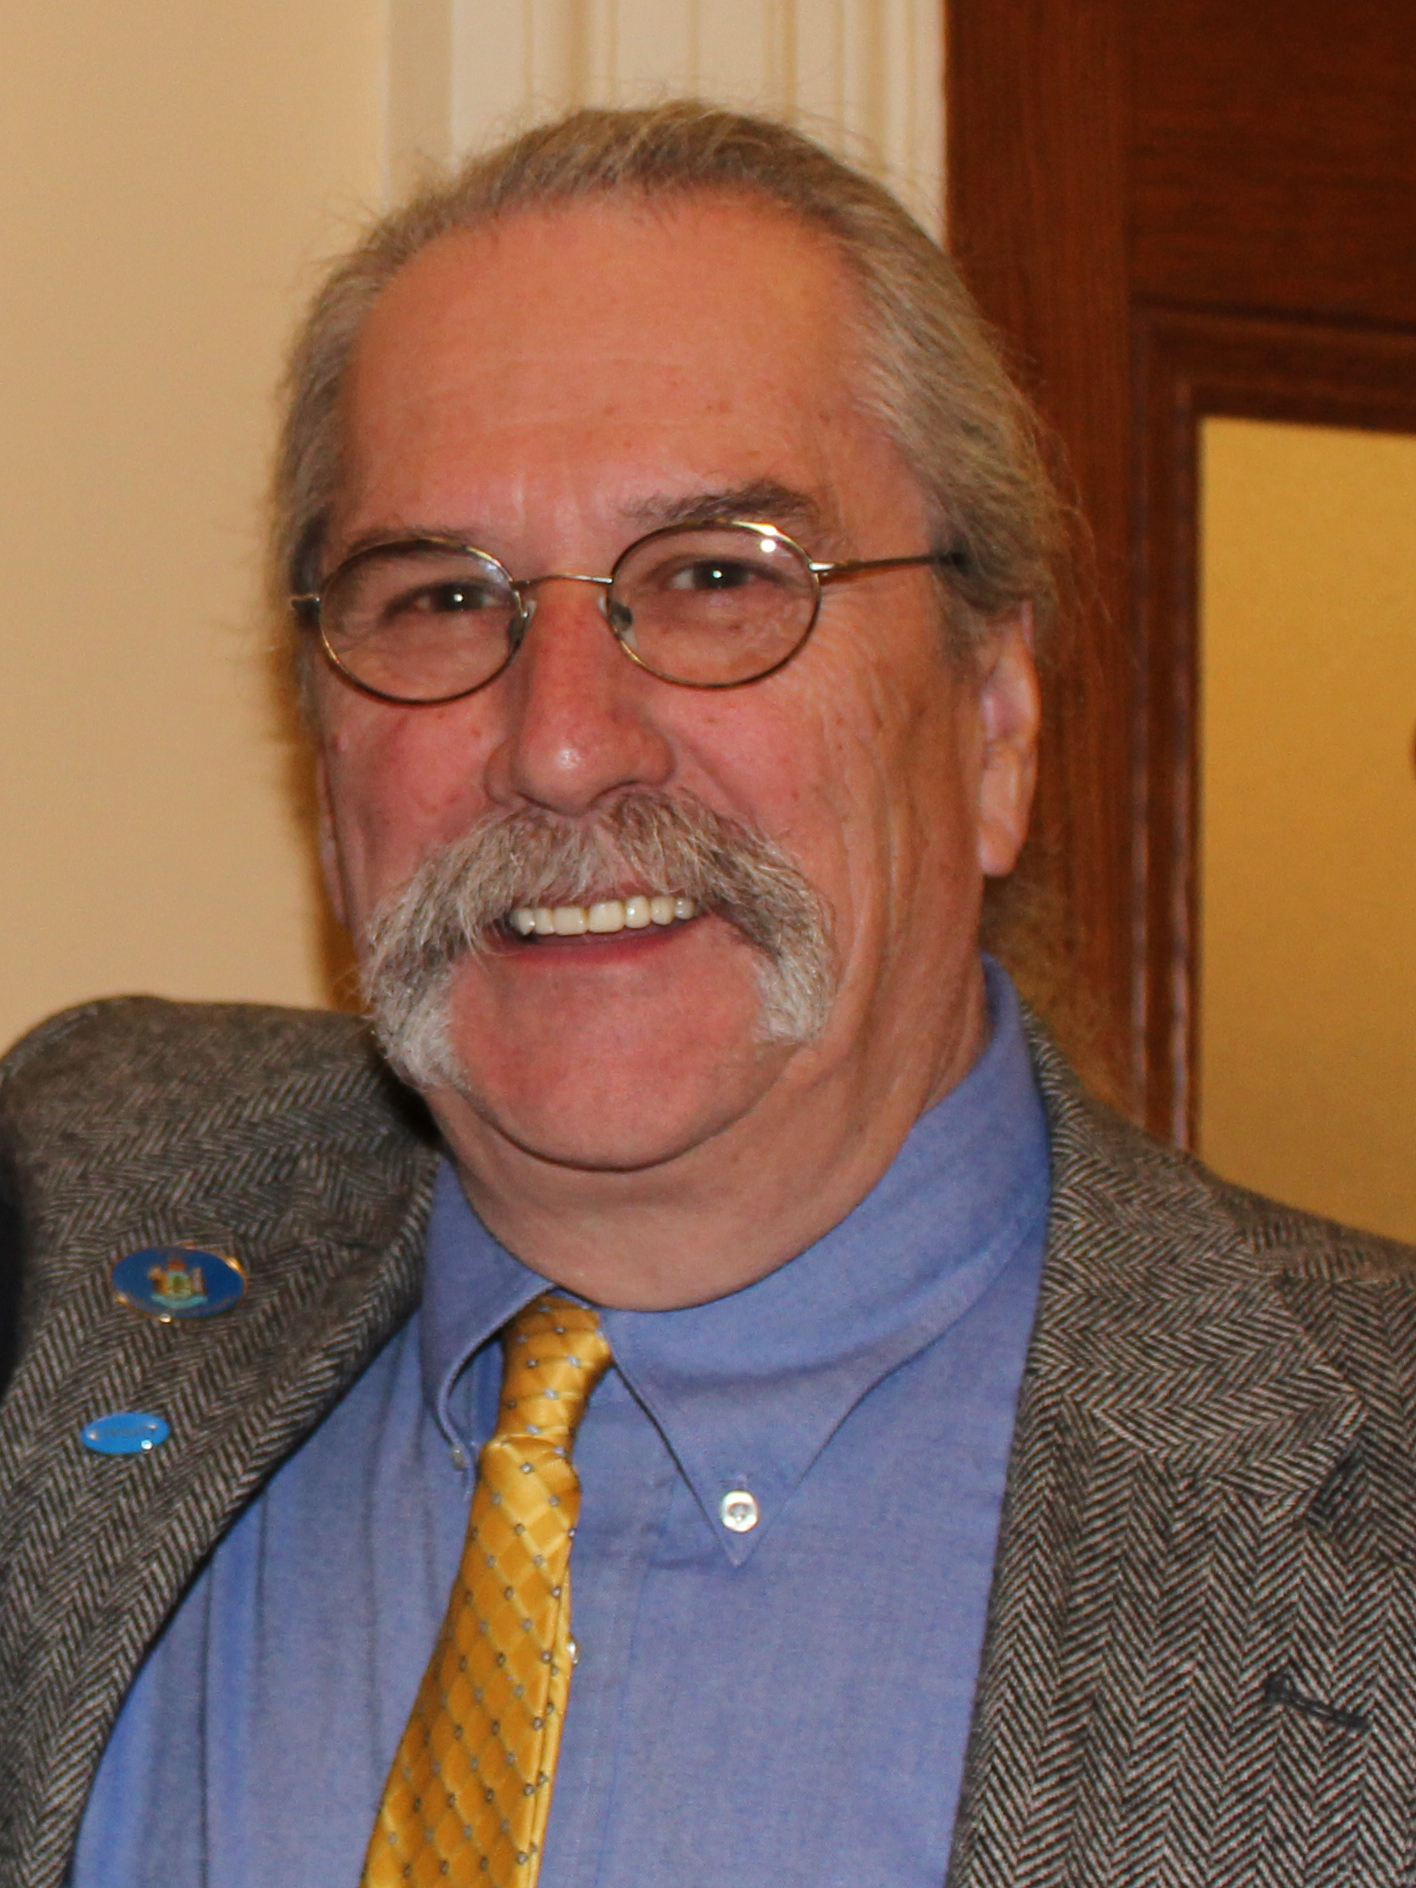 Representative Scott Landry